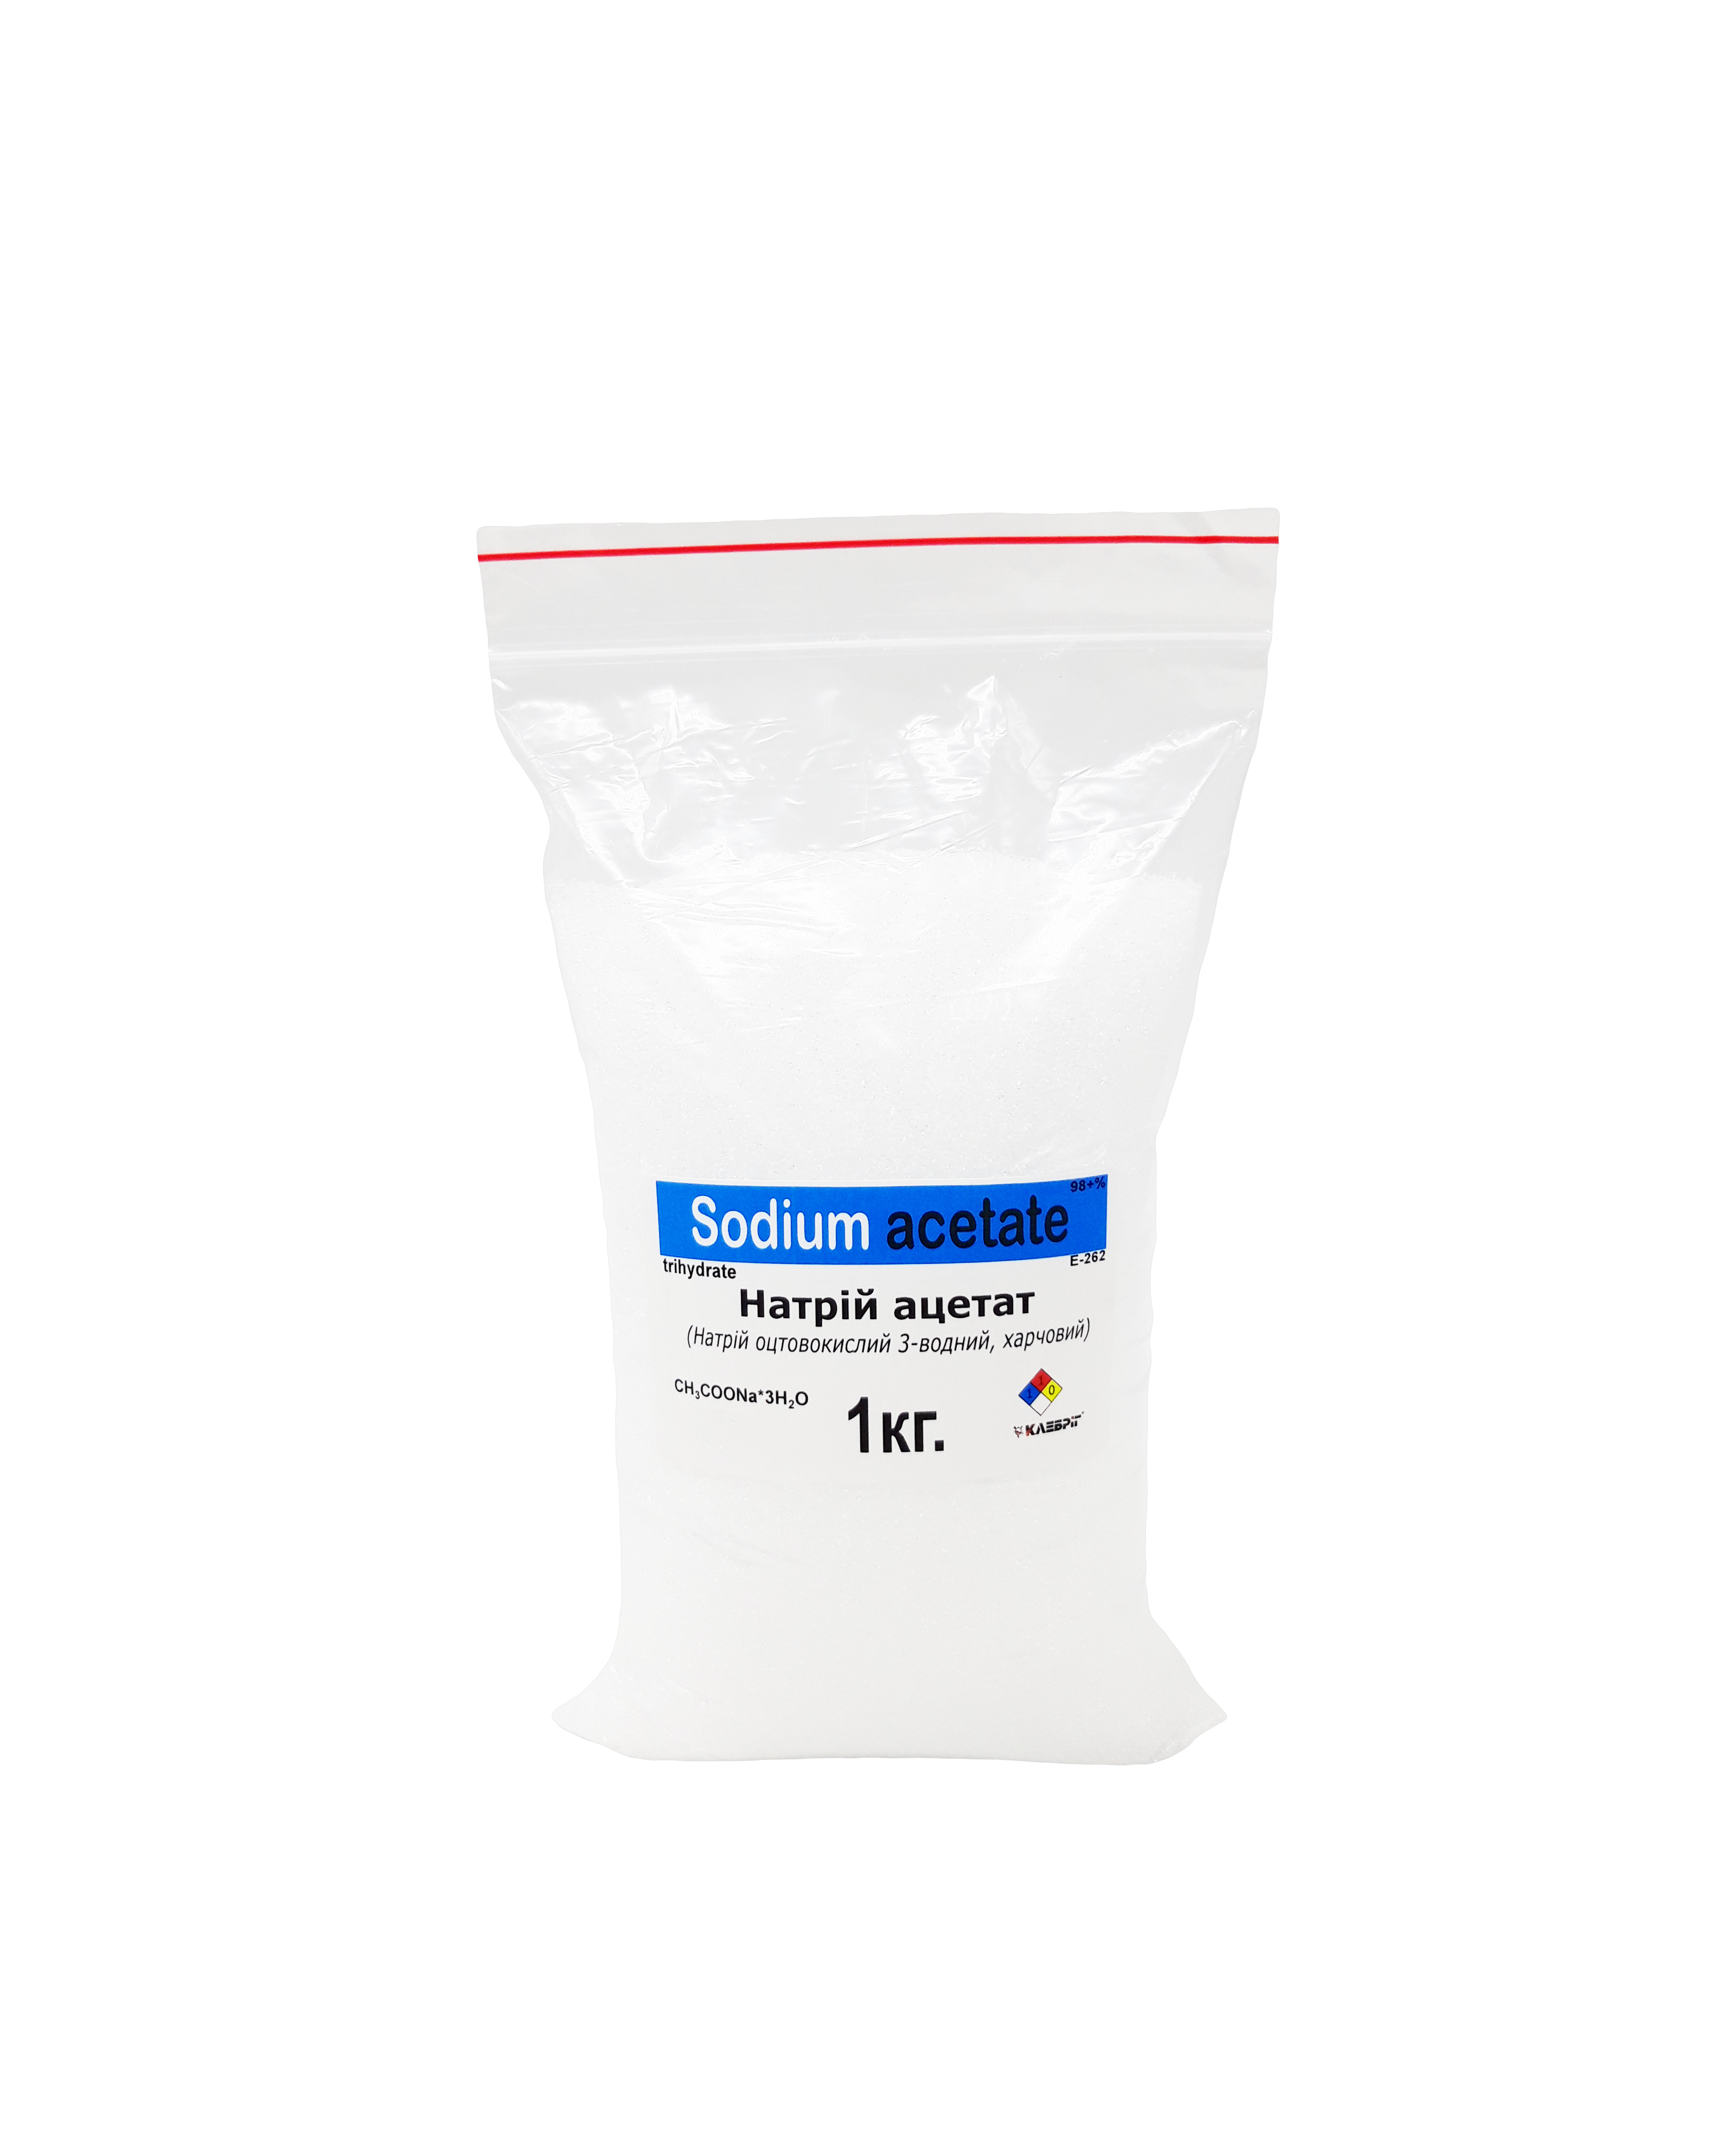 Натрій ацетат 3-водний Харчовий Натрій оцтовокислий Е-262 1 кг (АЦТ.НТР-1)